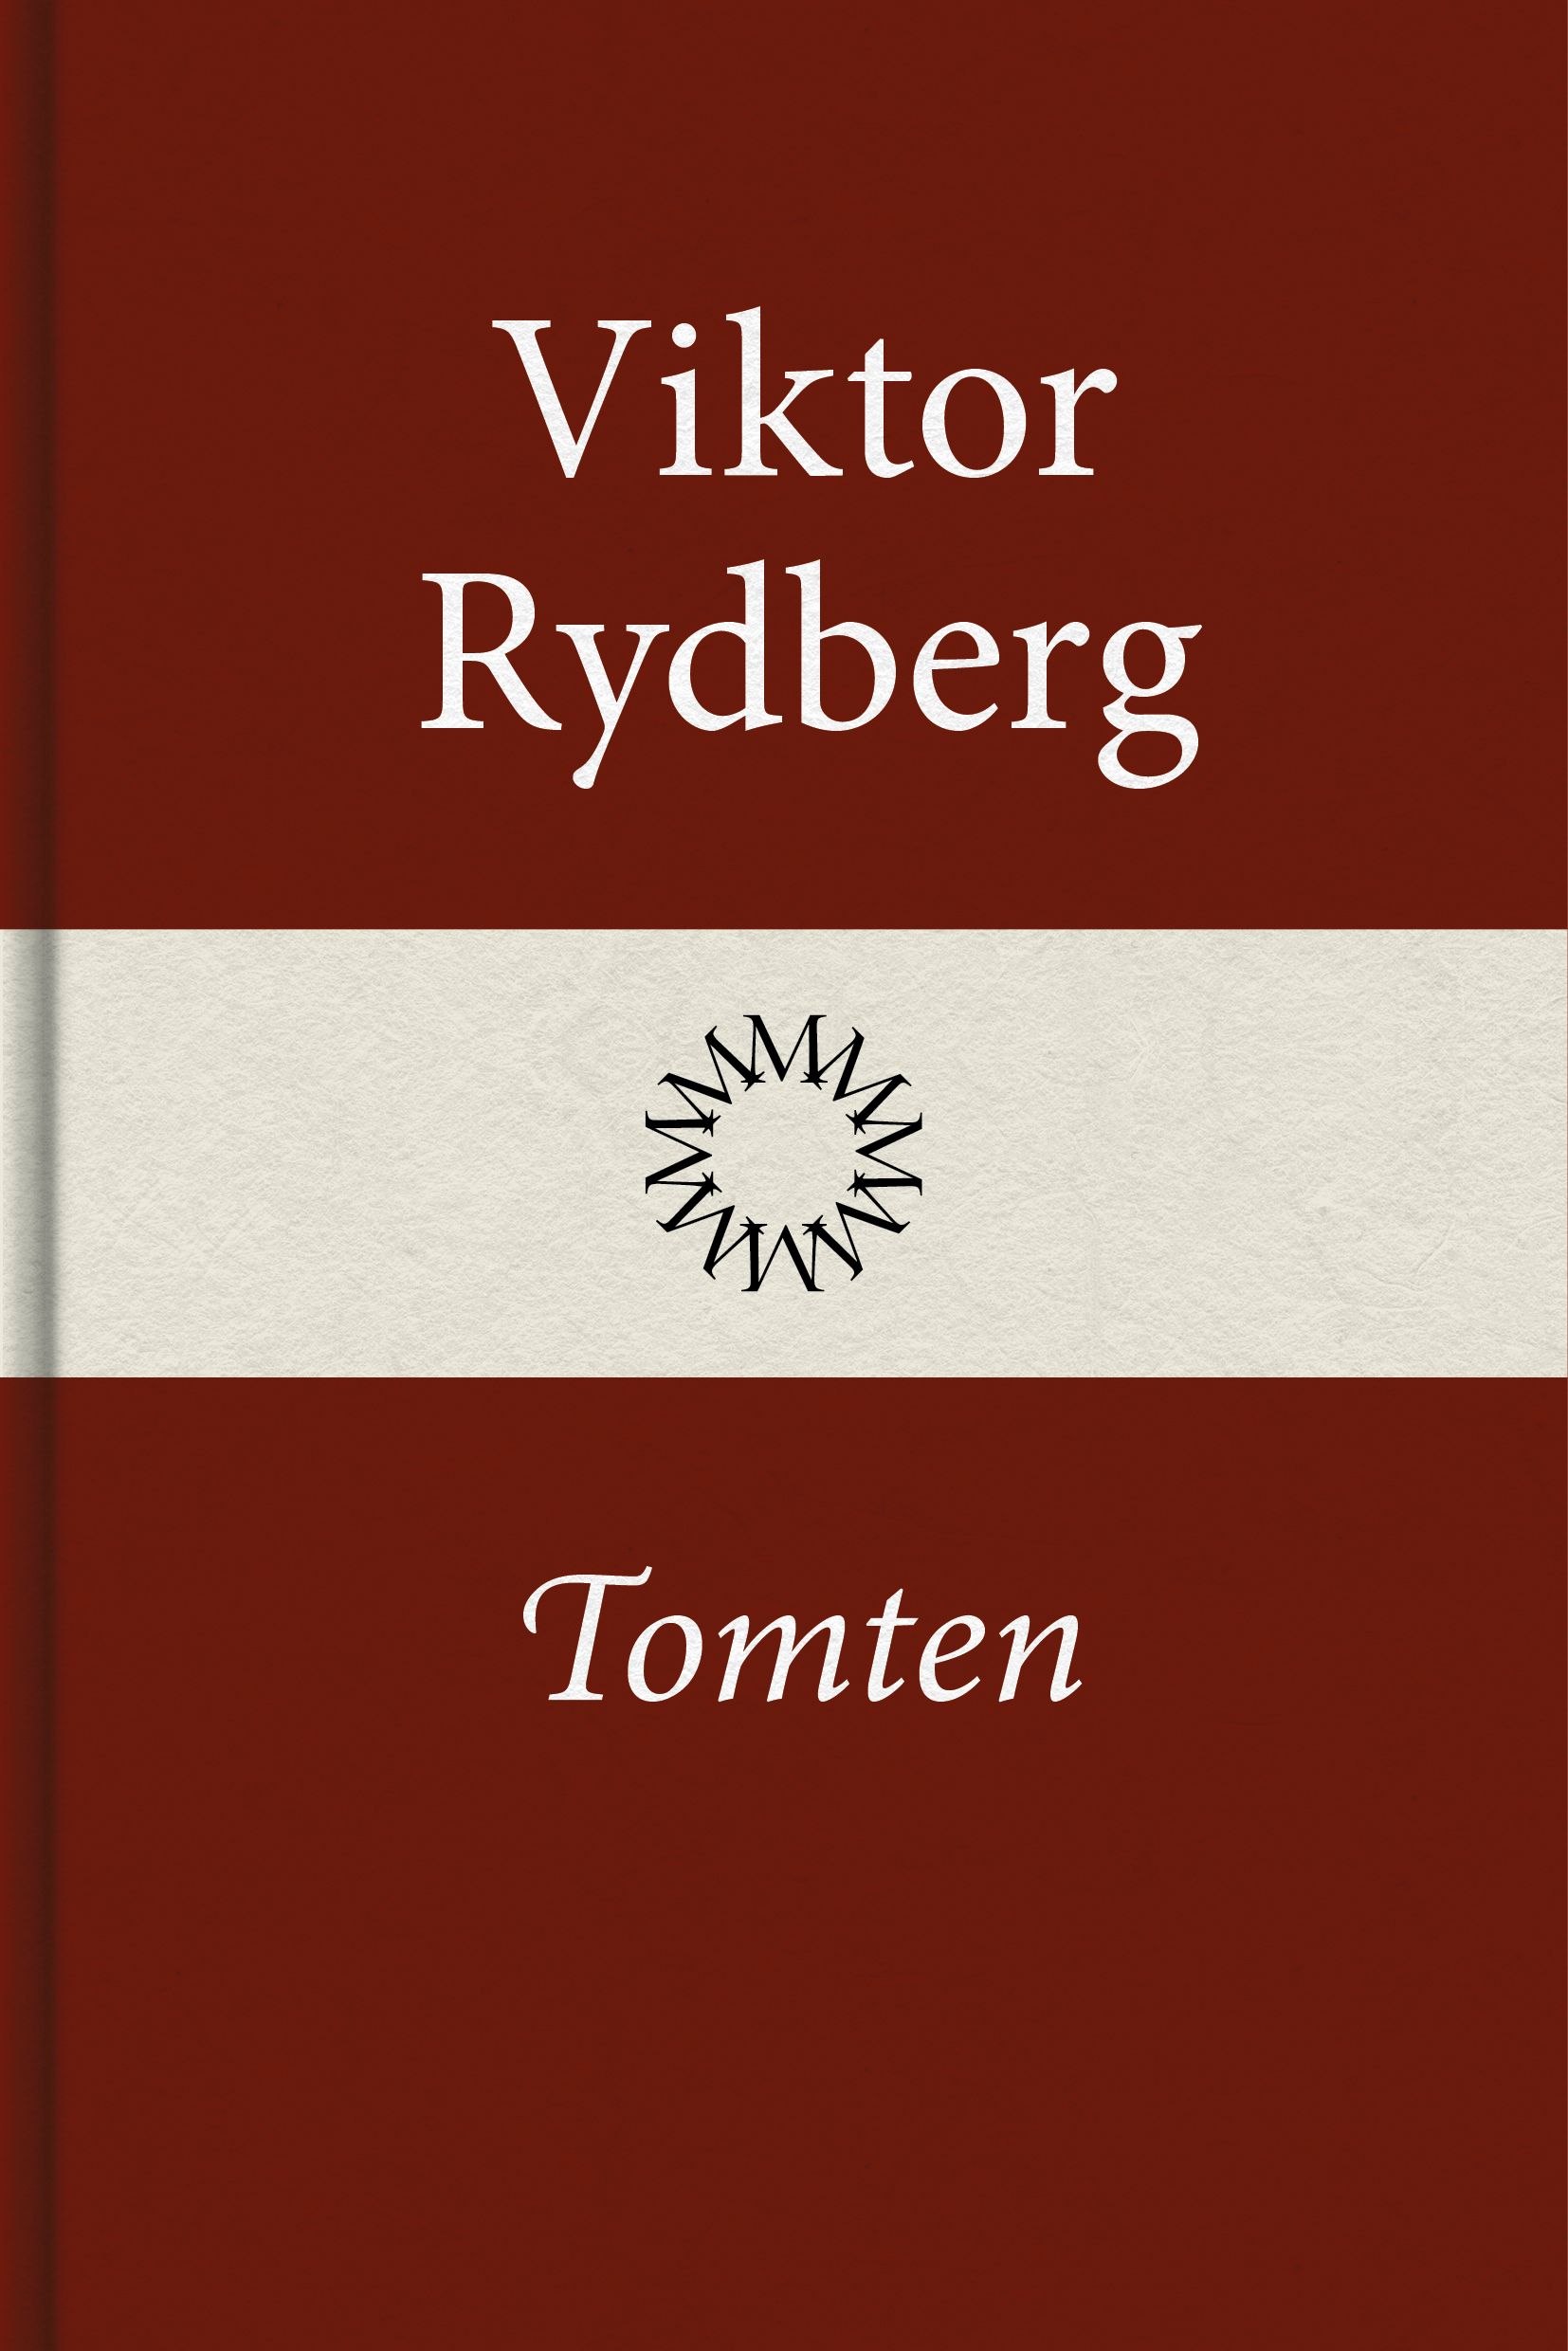 Tomten, e-bok av Viktor Rydberg